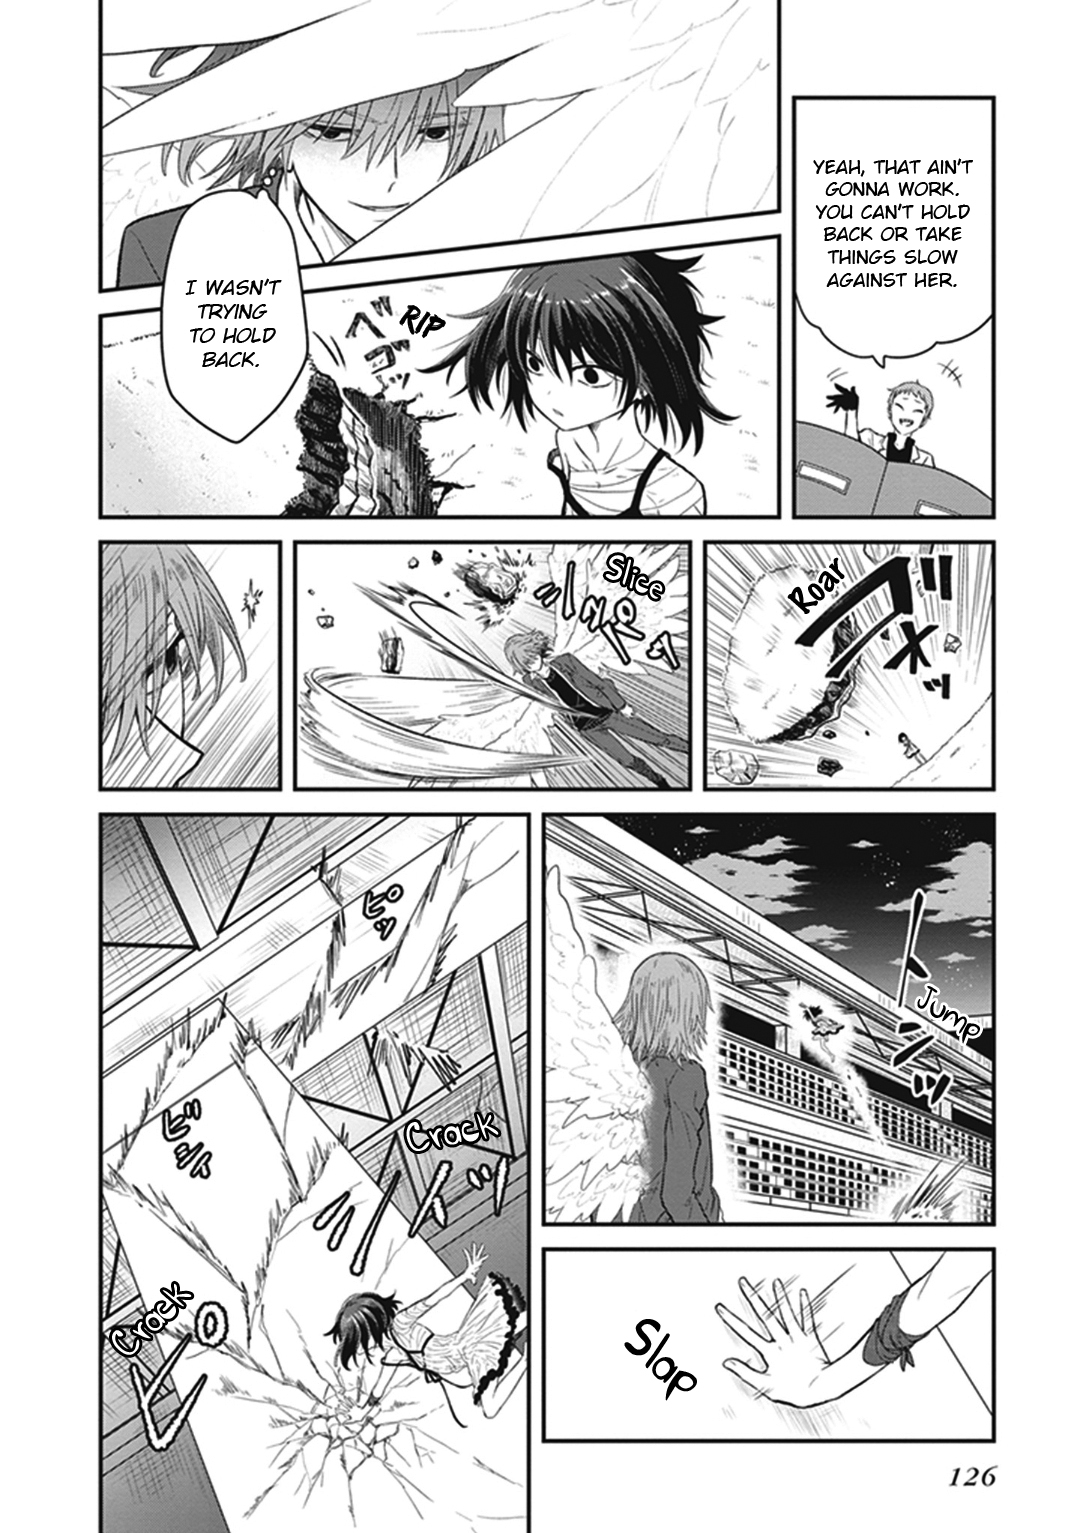 Toaru Majutsu no Index Gaiden: Toaru Kagaku no Dark Matter Vol. 1 Ch. 4